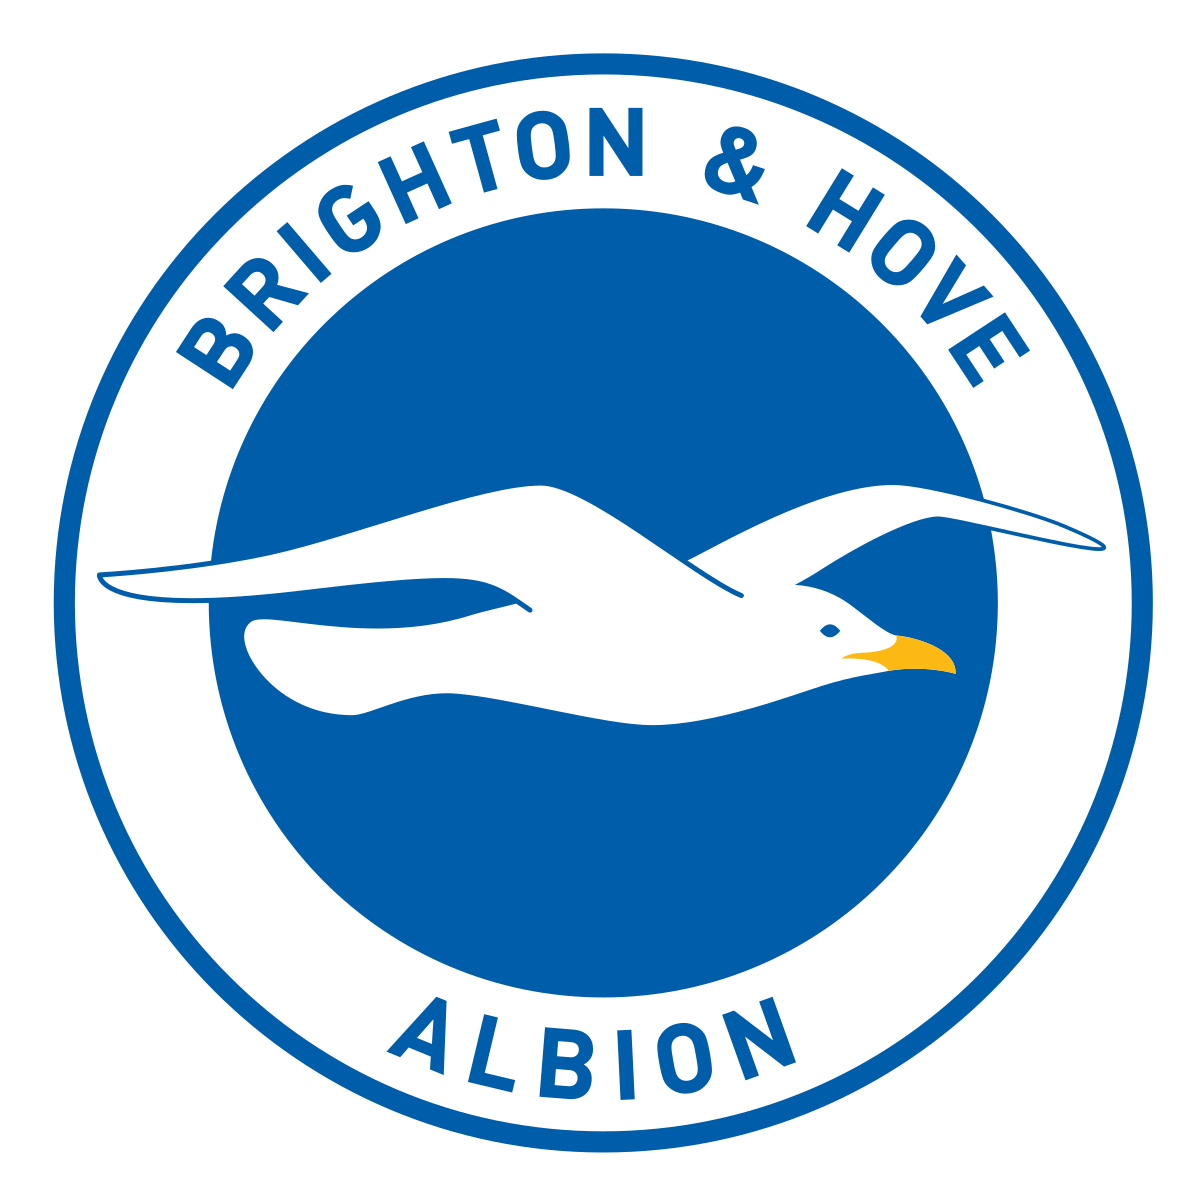 brighton--hove-albion-fc-season-2020-2021